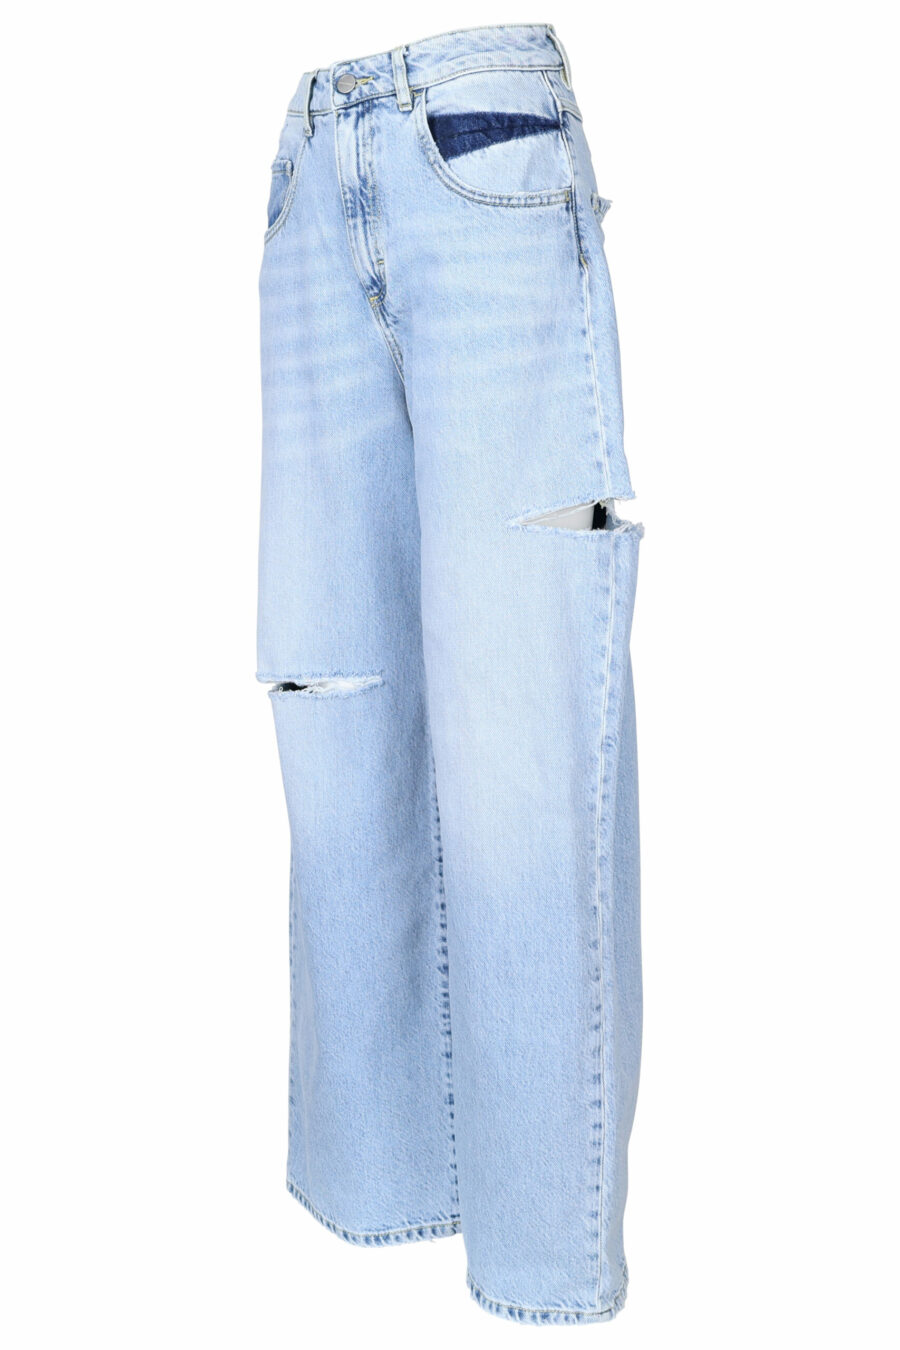 Blaue "poppy" Jeans mit Rissen - 8052691167298 1 skaliert